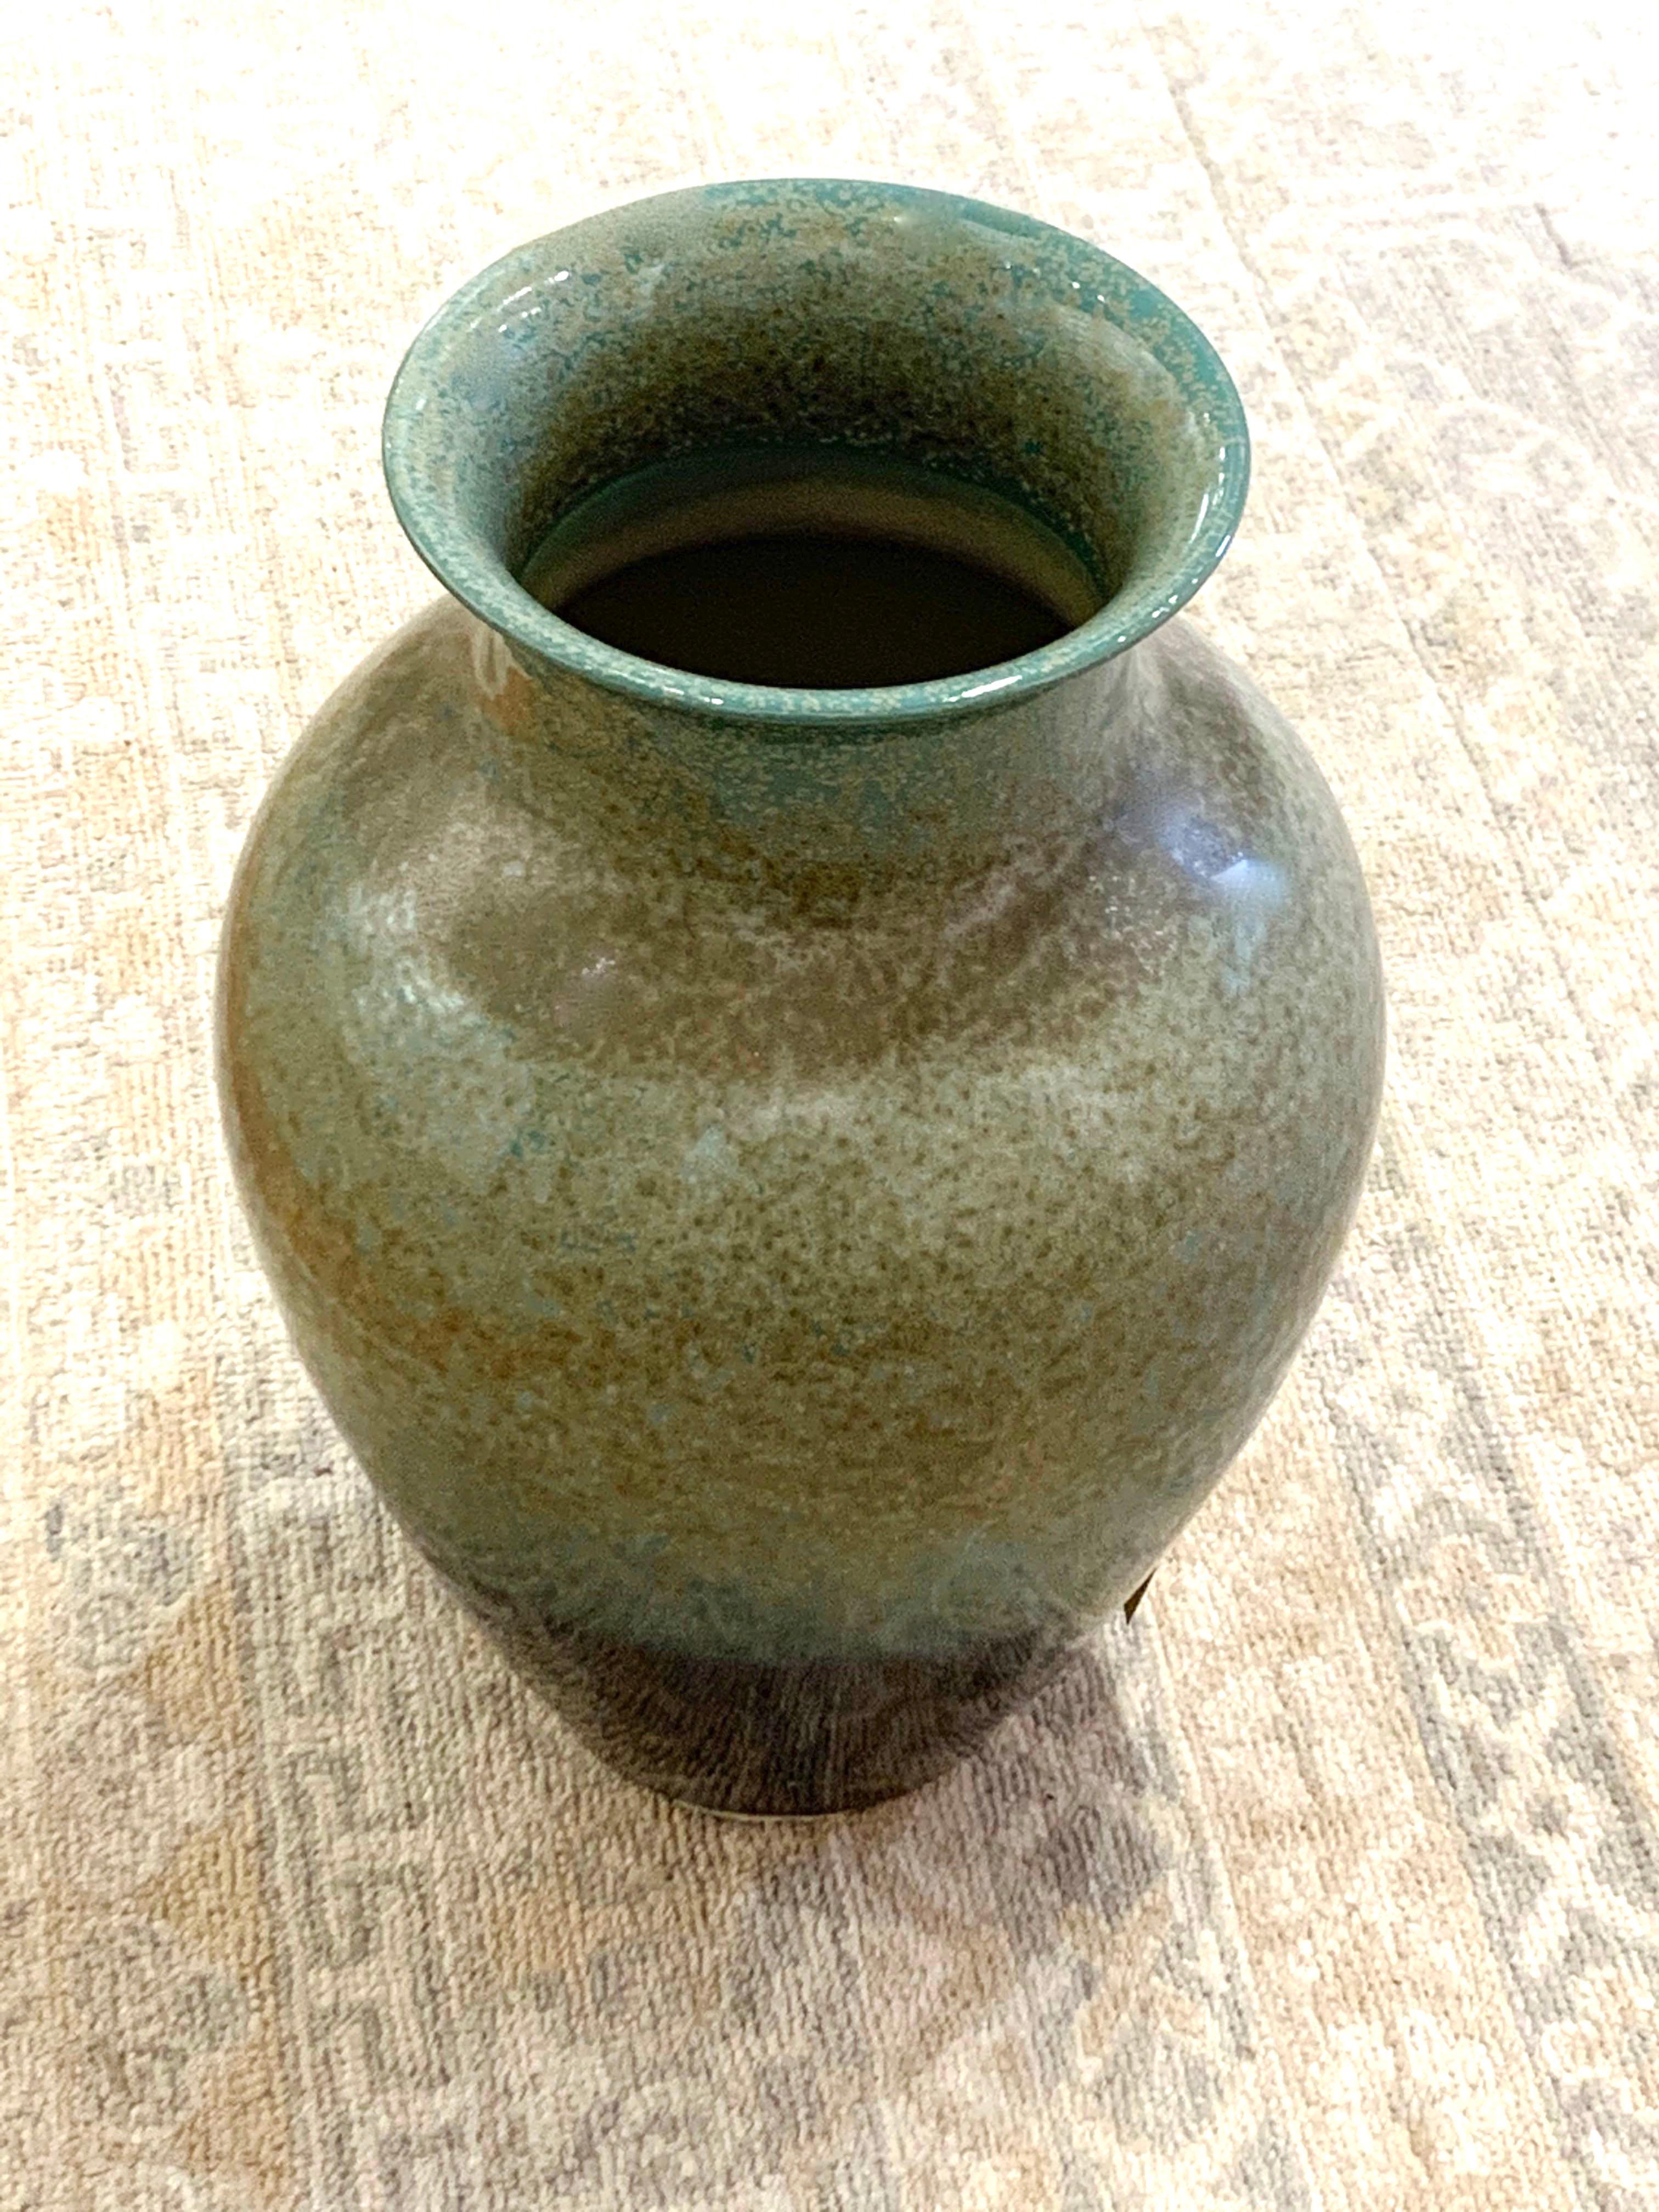 Zeitgenössische große chinesische Porzellanvase.
Blasses Türkis mit hellbraunen Sprenkeln auf dem oberen Teil der Vase, einfarbiger schwarzer Bodenstreifen. 
Zwei sind verfügbar und werden einzeln verkauft.
 